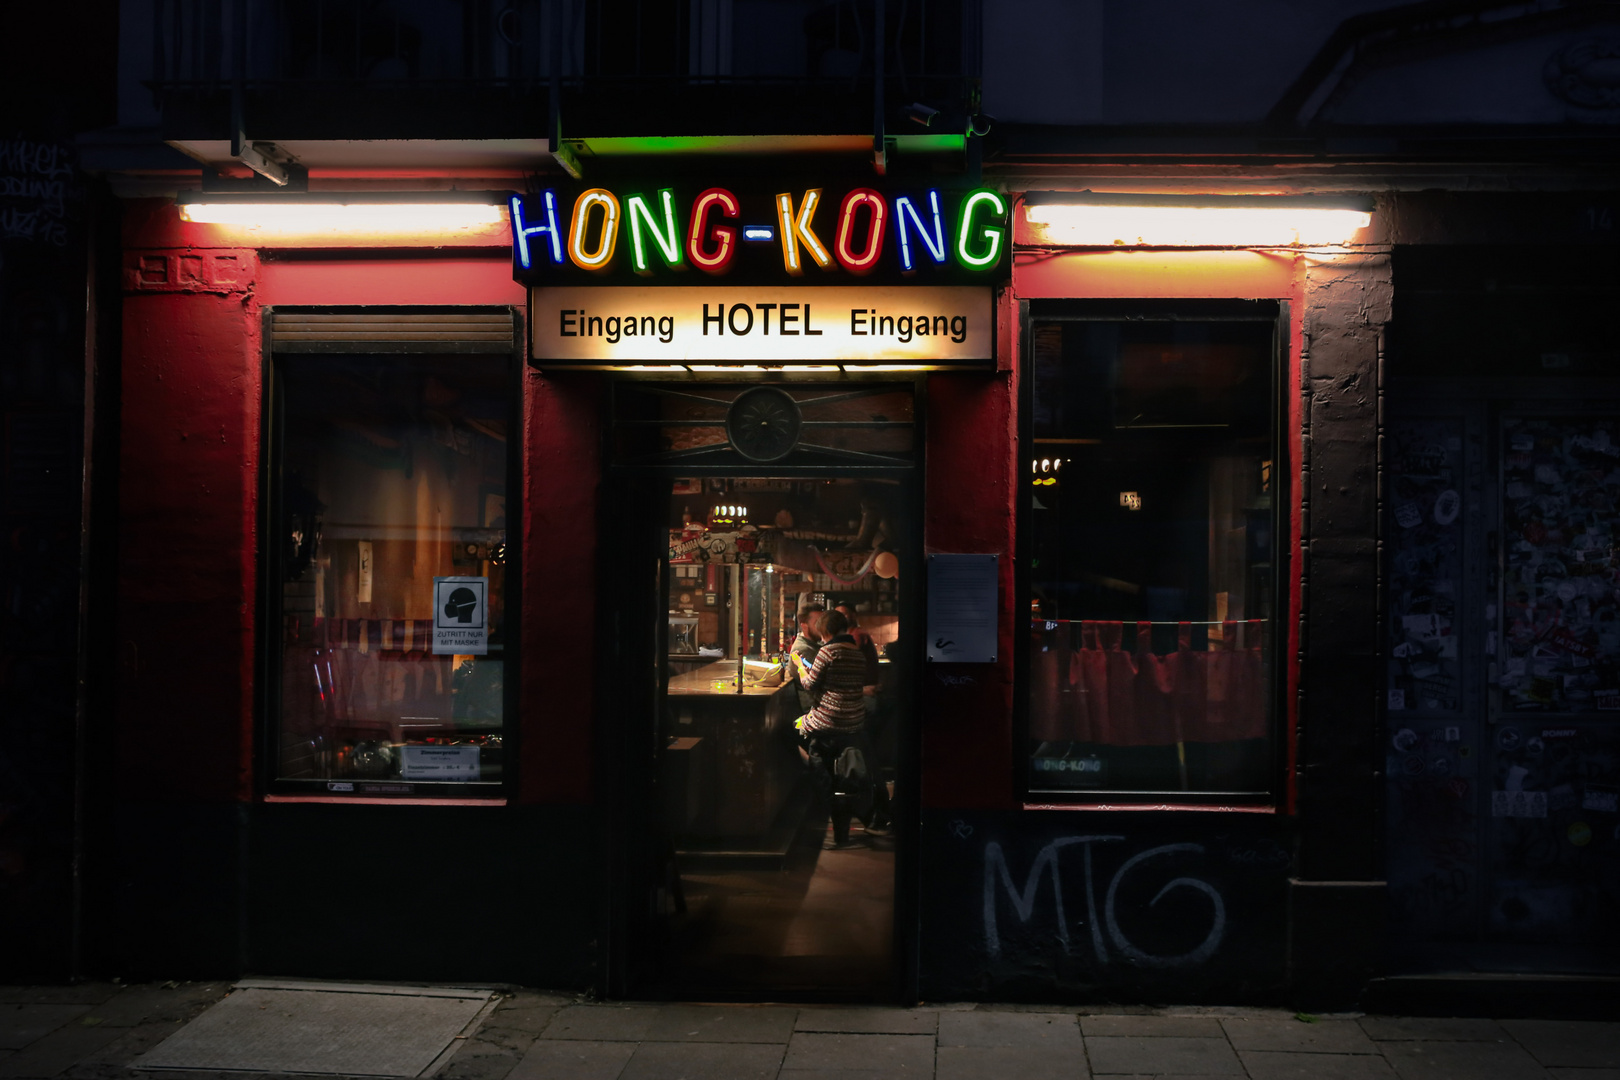 HONGKONG by night*